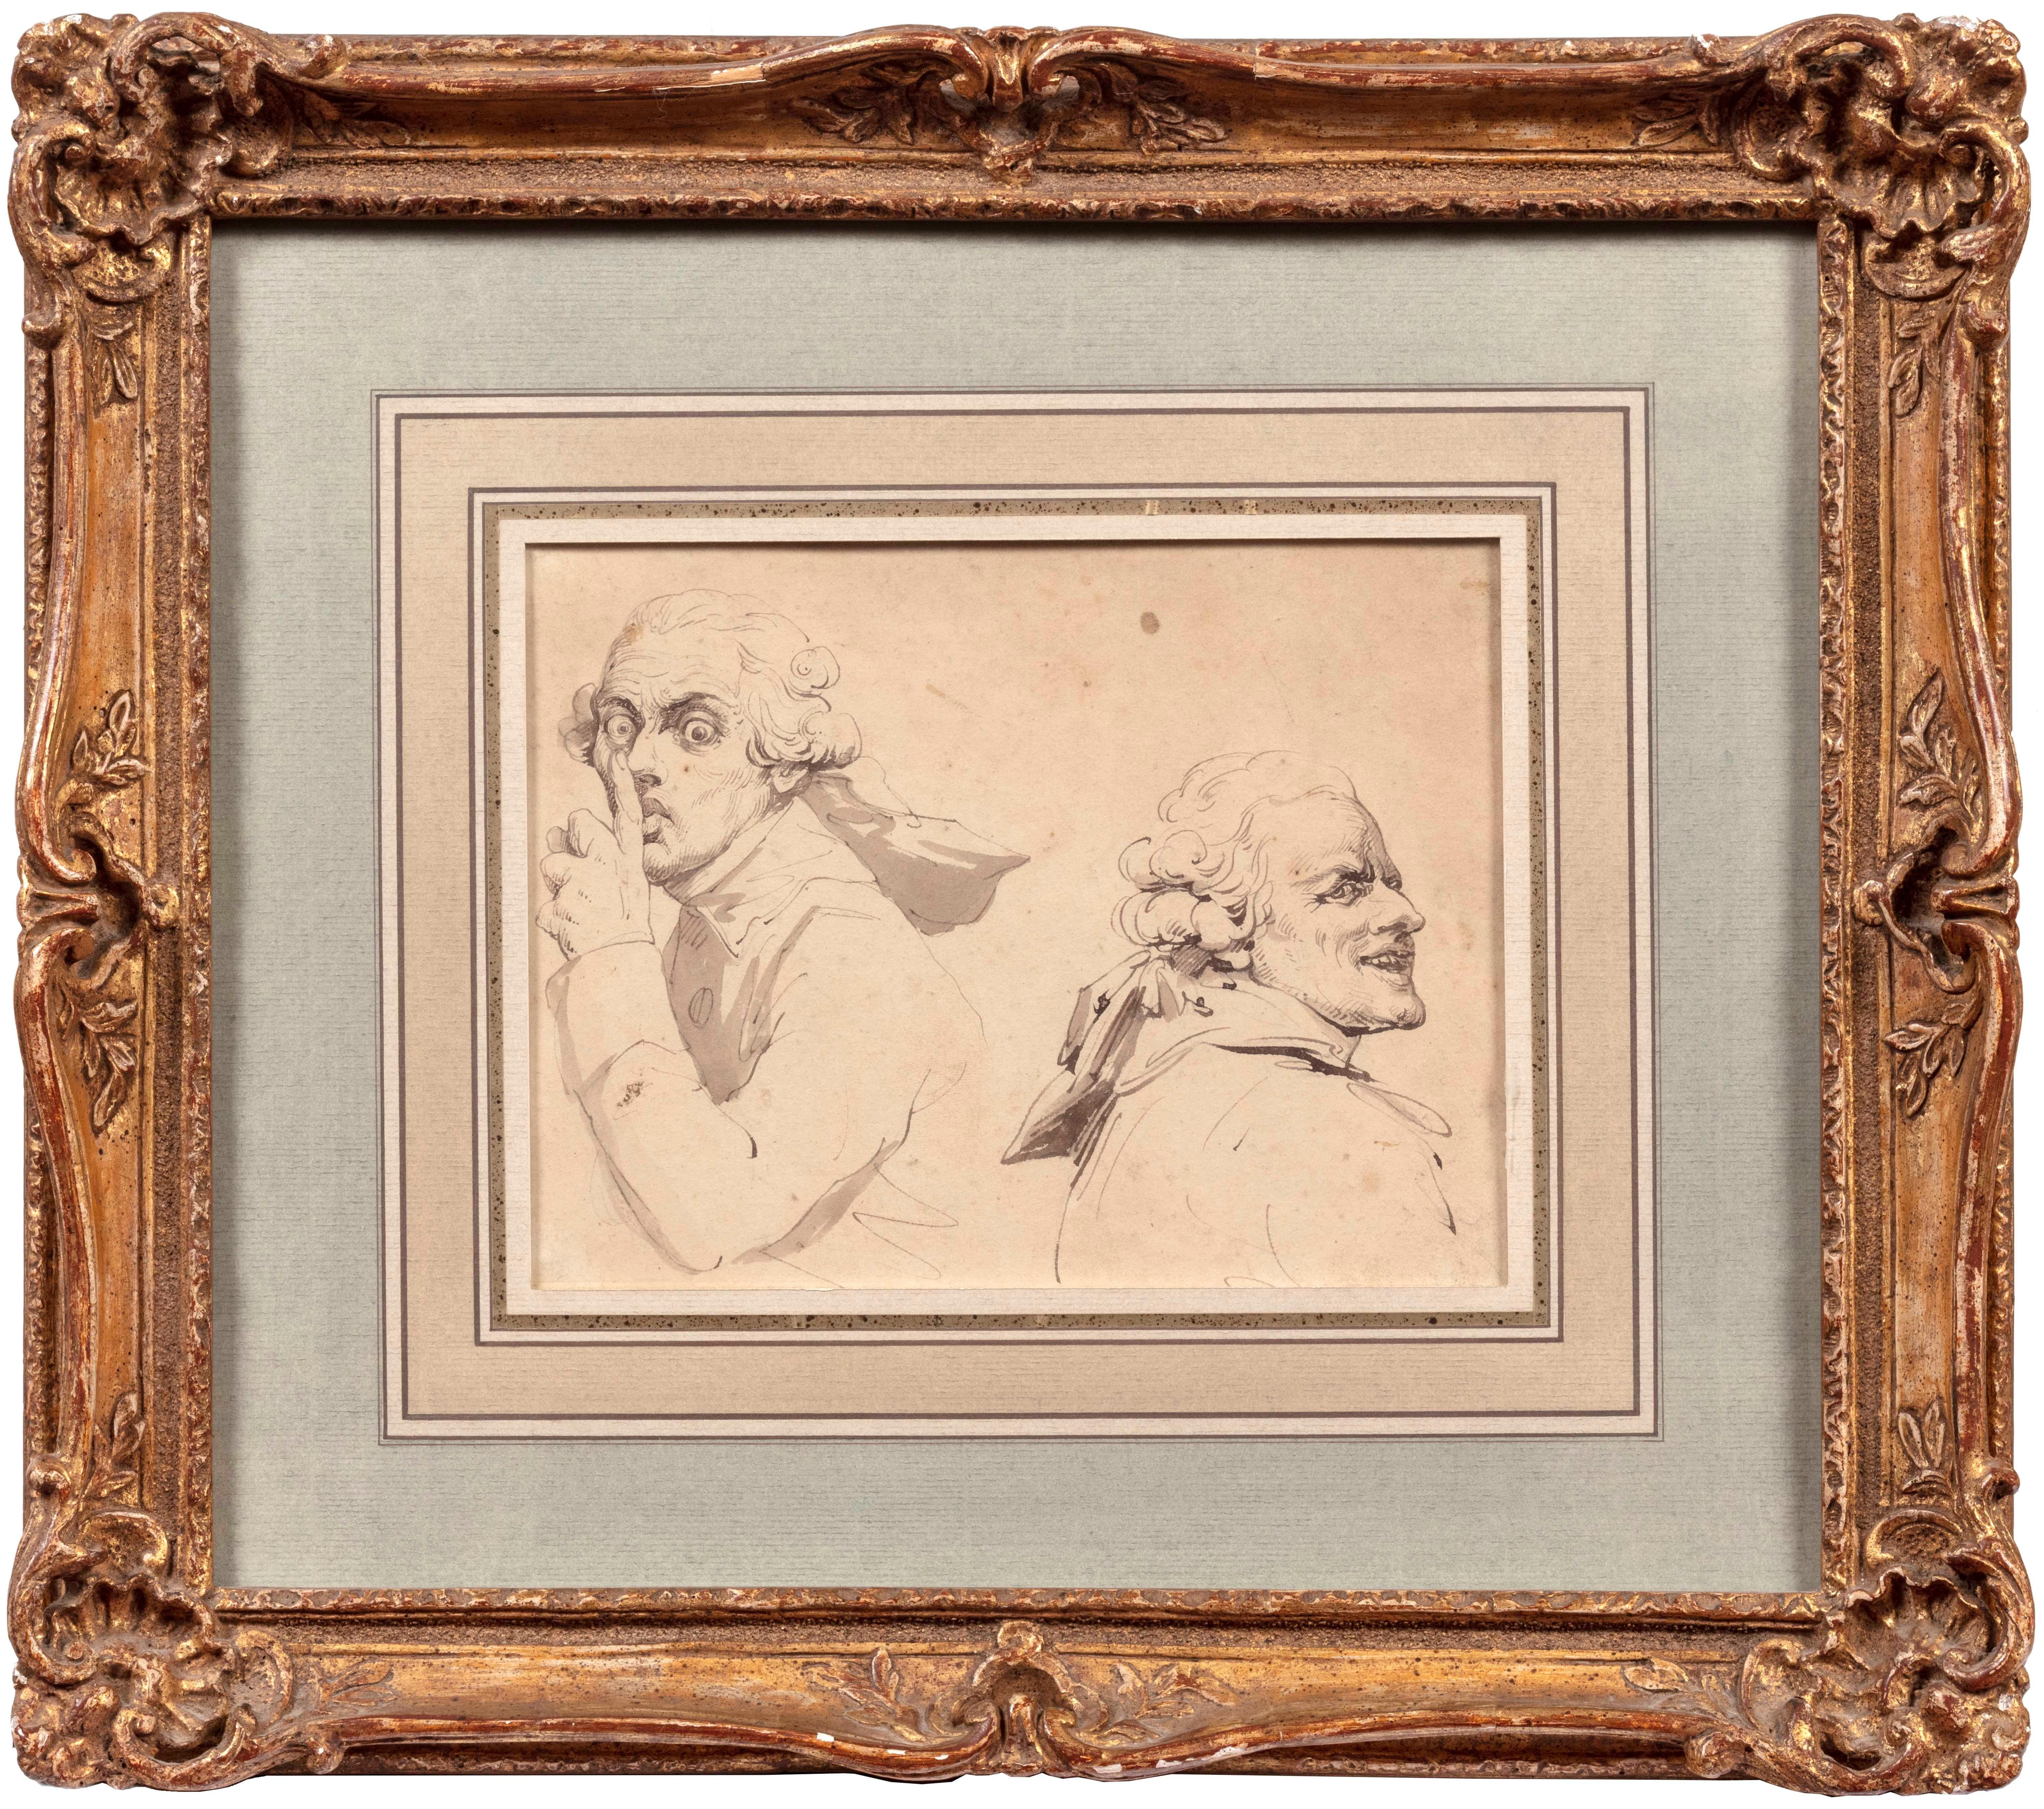 Sketch after Joseph Ducreux’s Self-Portraits - Art by Thomas Rowlandson